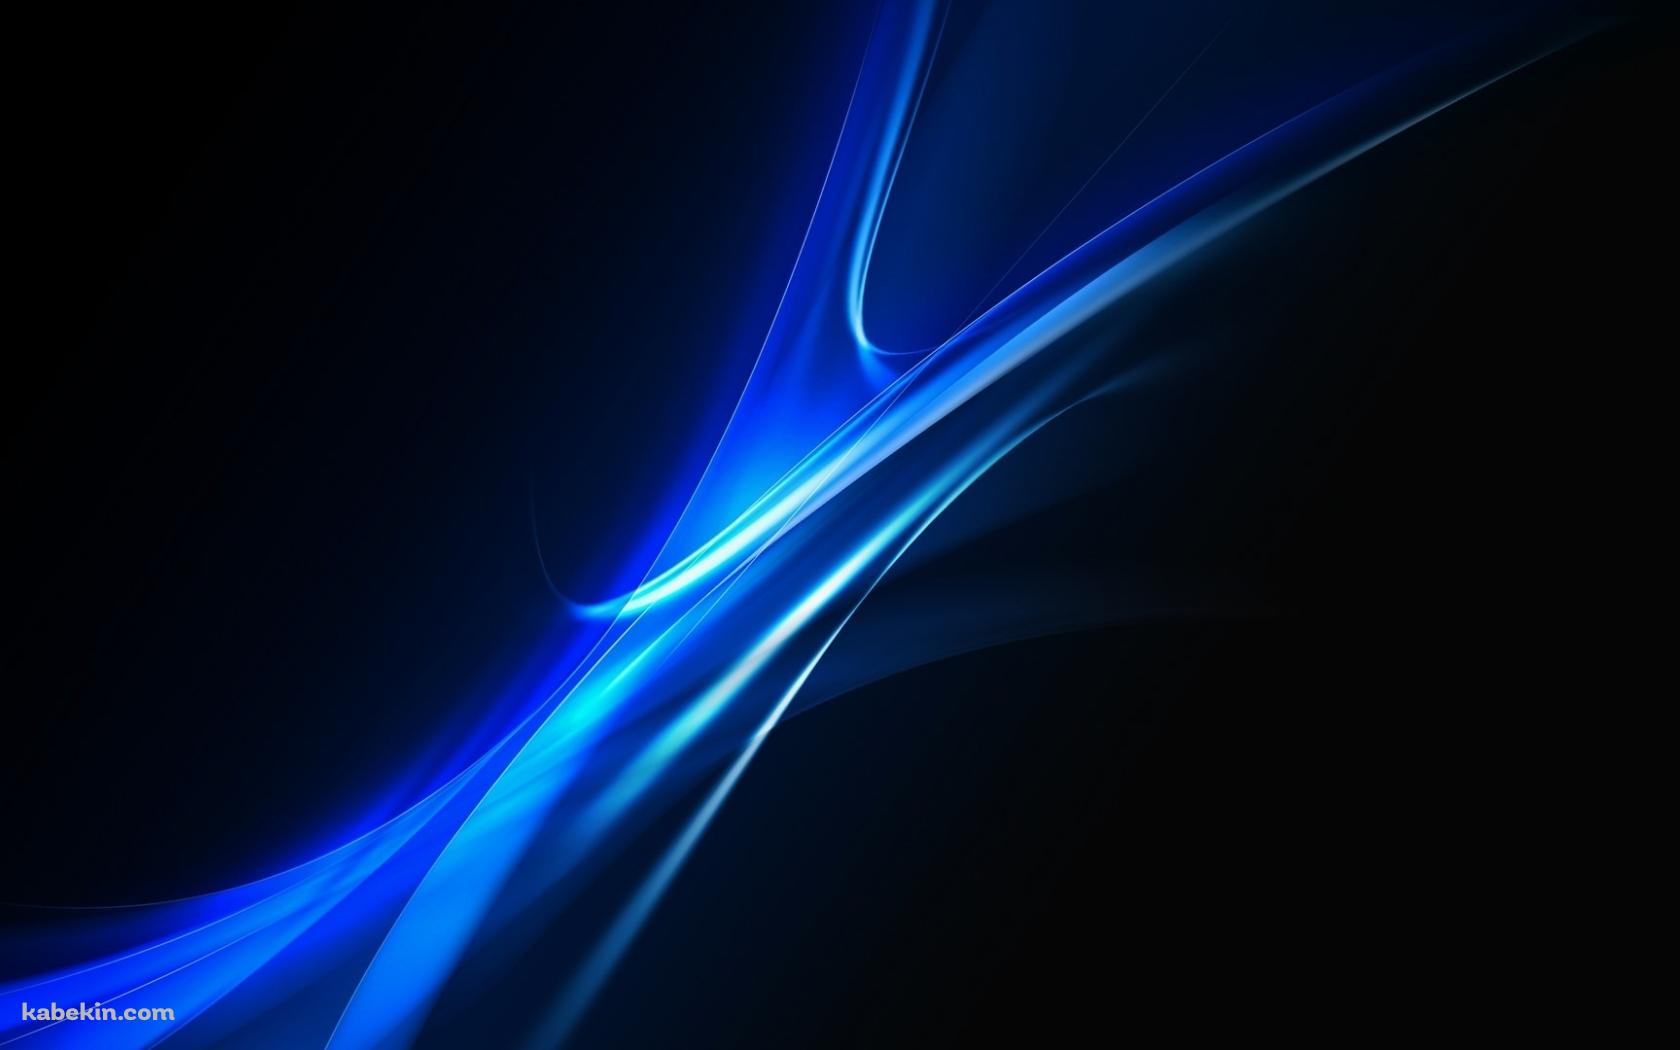 光沢のある青い曲線の壁紙(1680px x 1050px) 高画質 PC・デスクトップ用